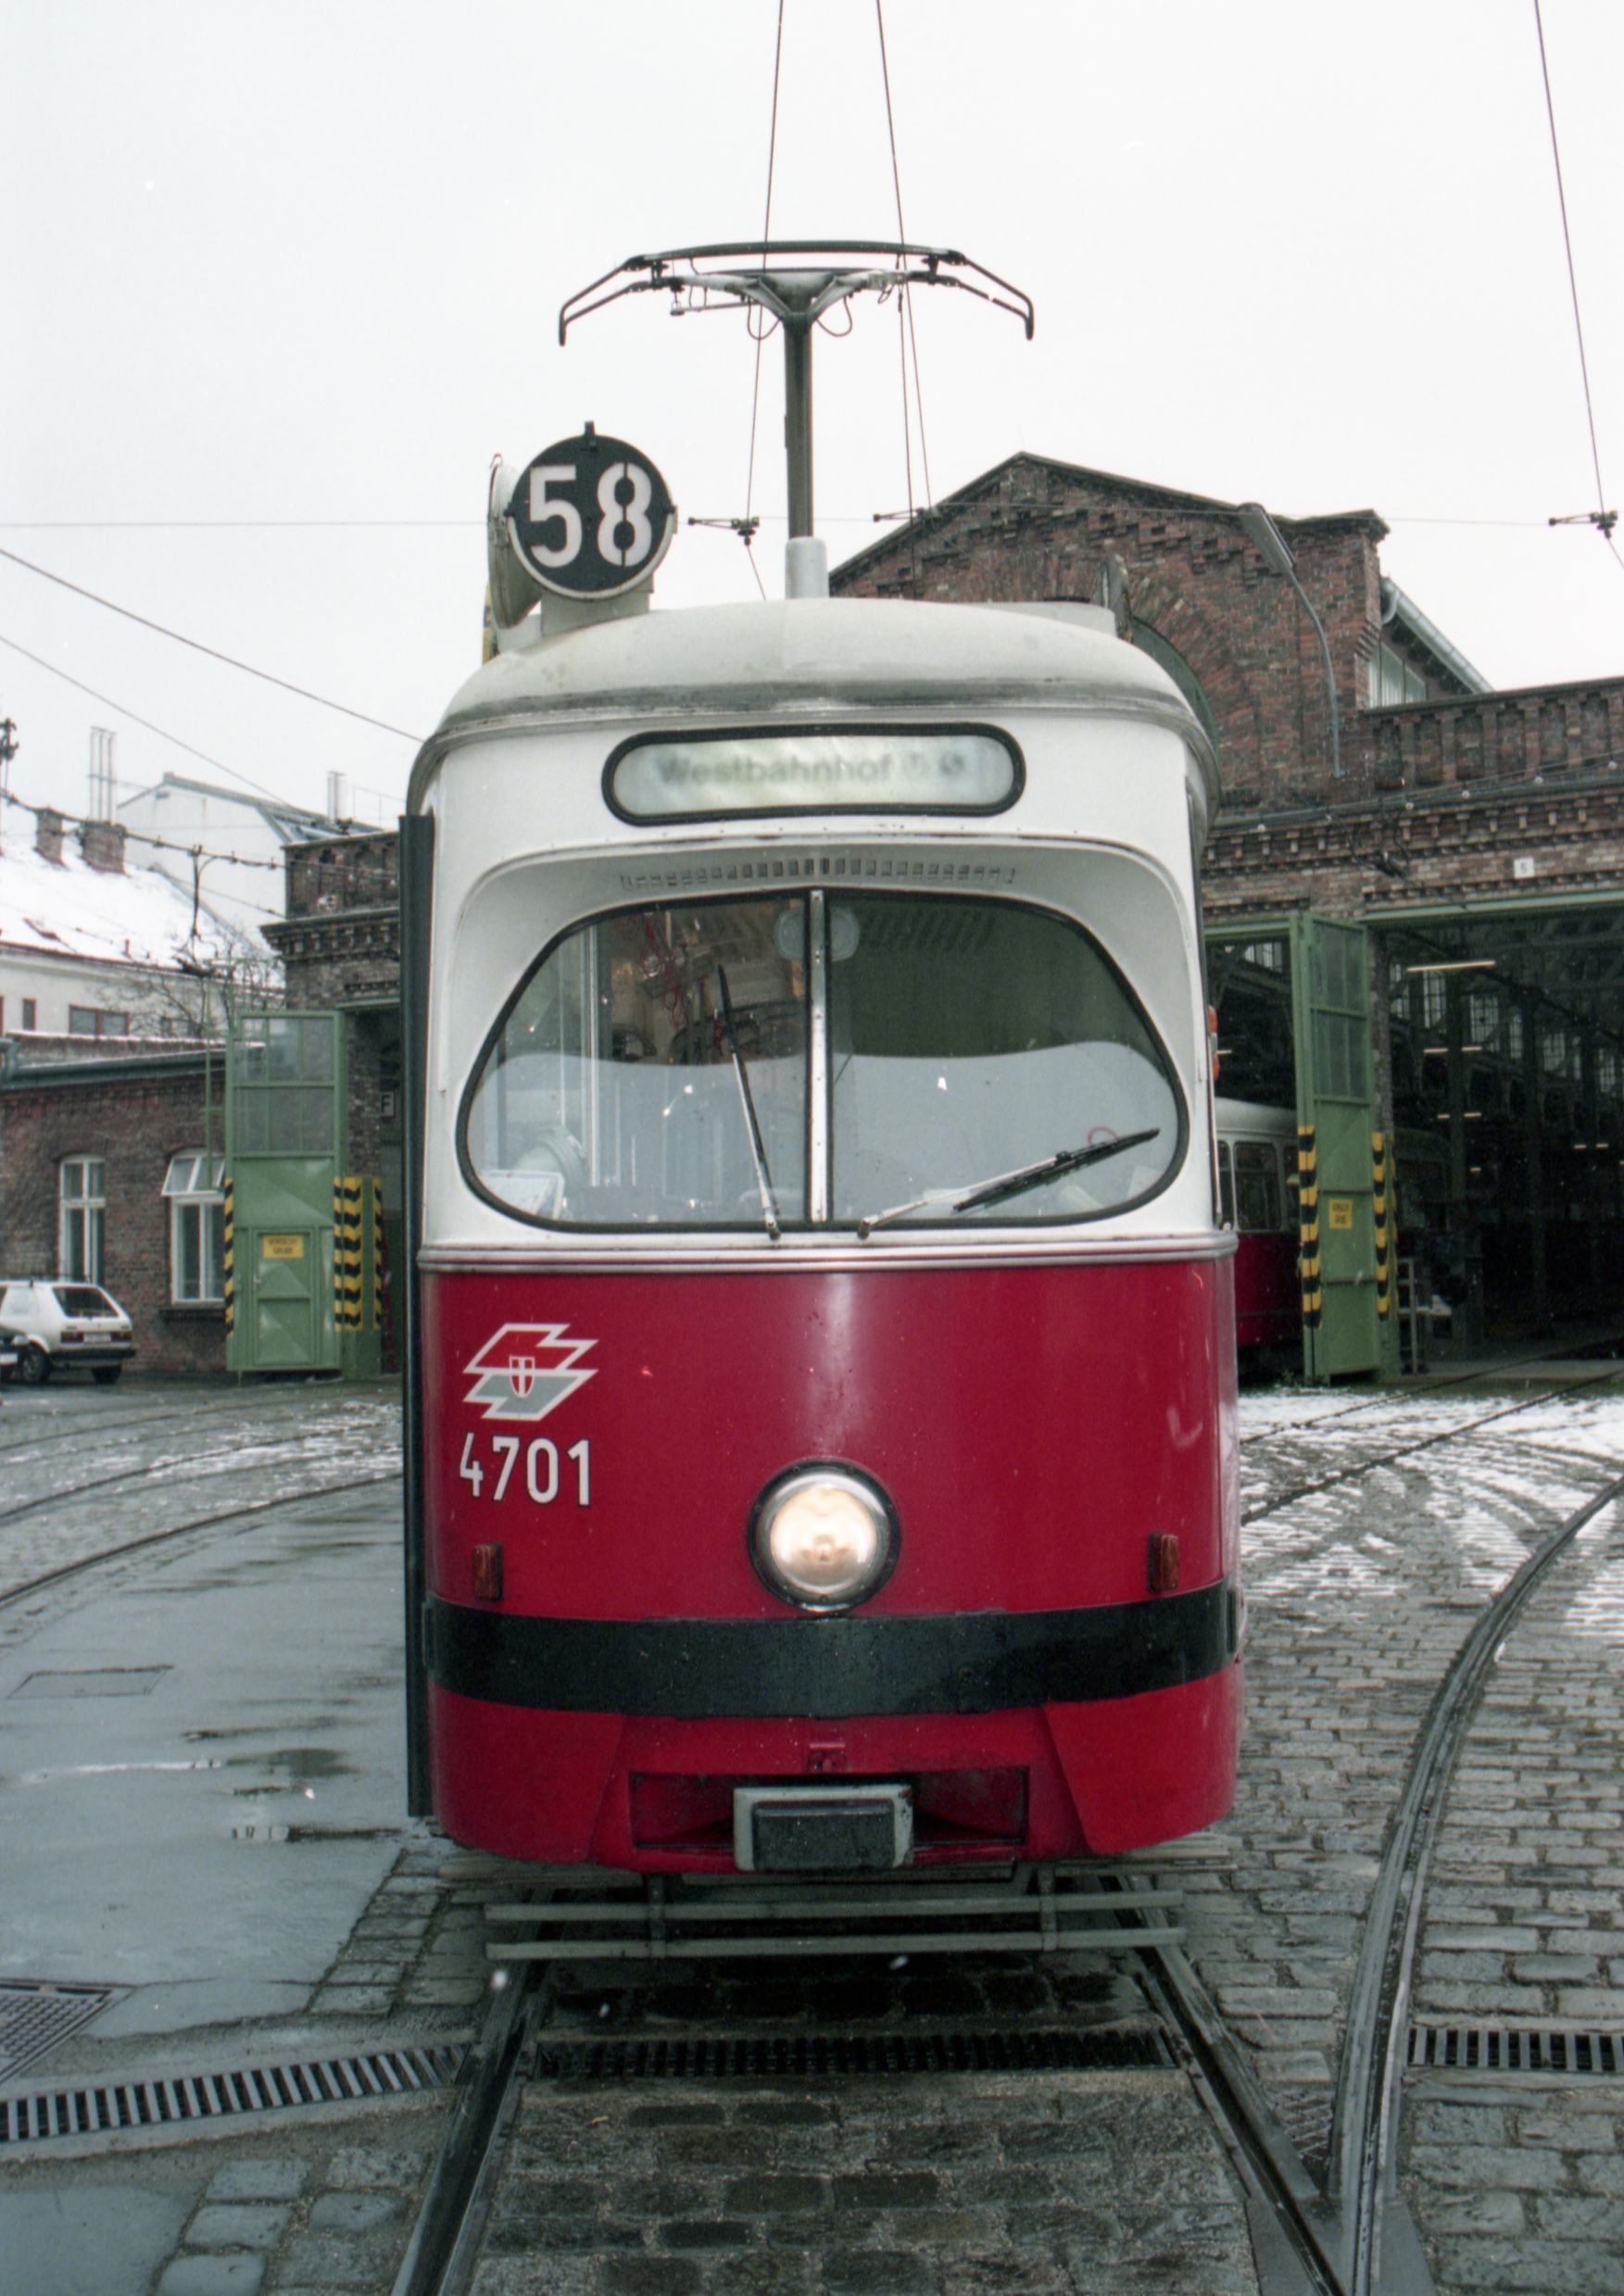 Triebwagen 4701 der Type E1 als Linie 58 am 26.11.1996. unterwegs